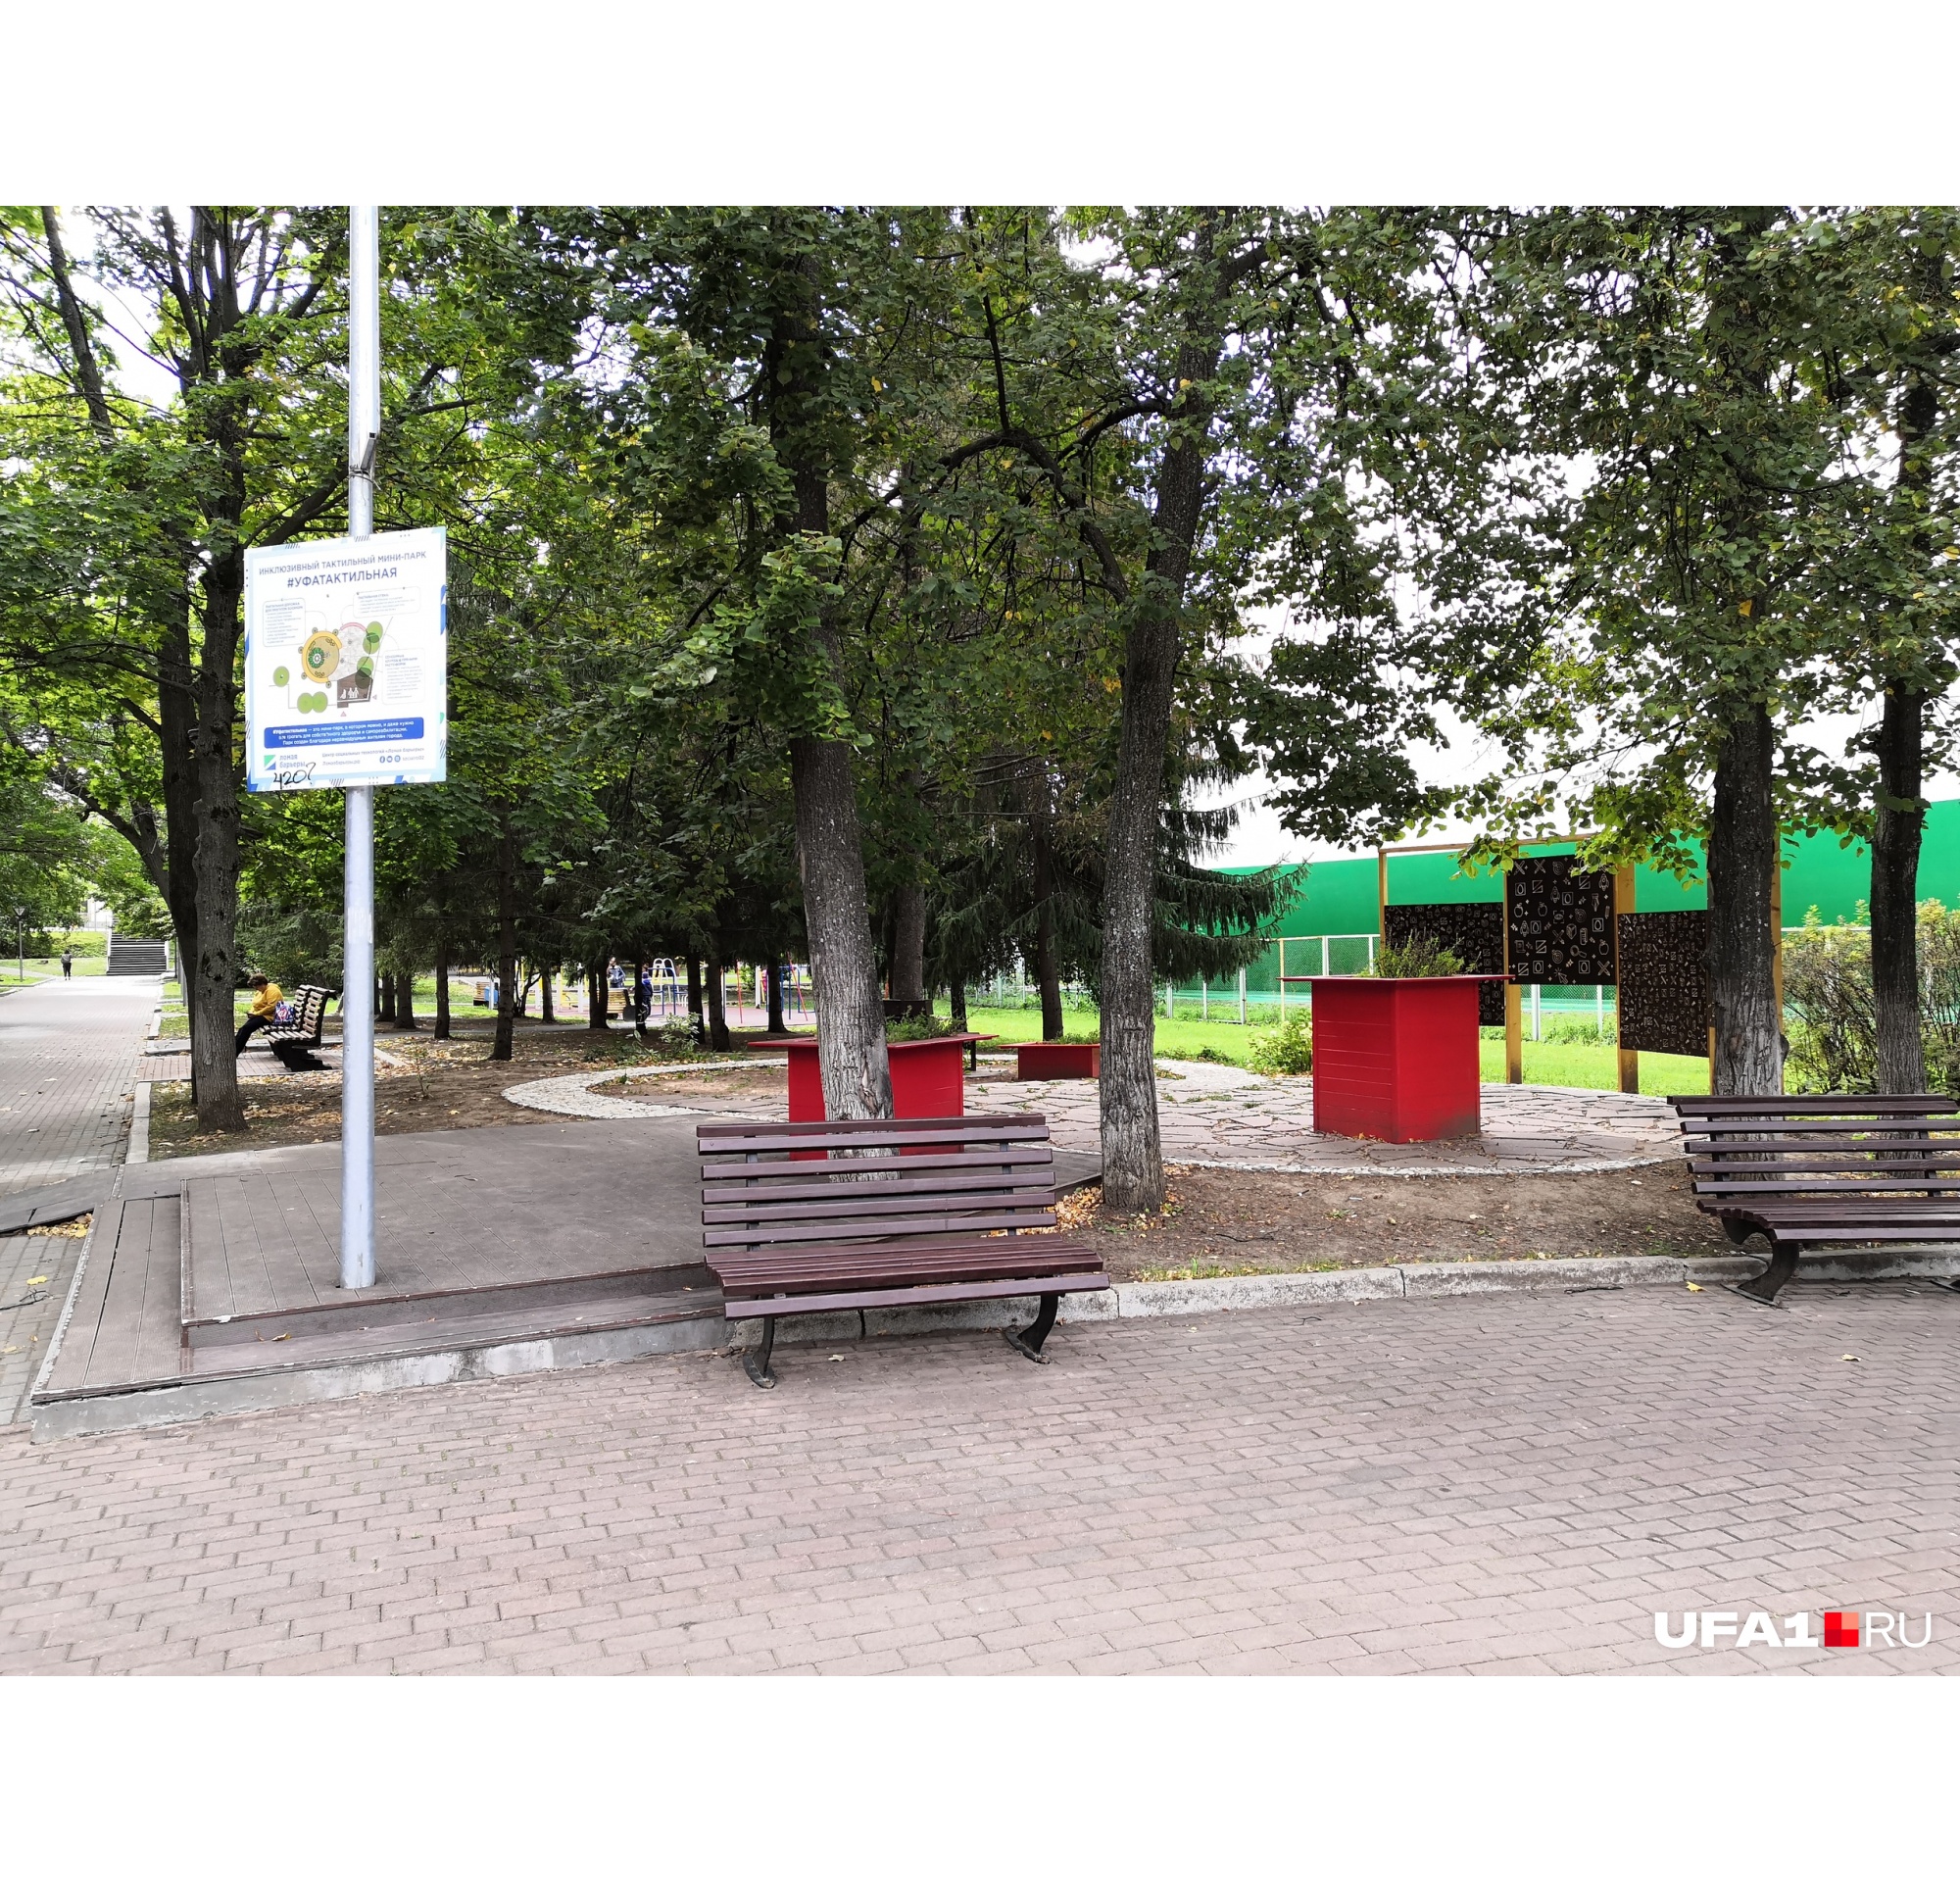 Без перемен: во что за год превратилась тактильная площадка в парке Якутова